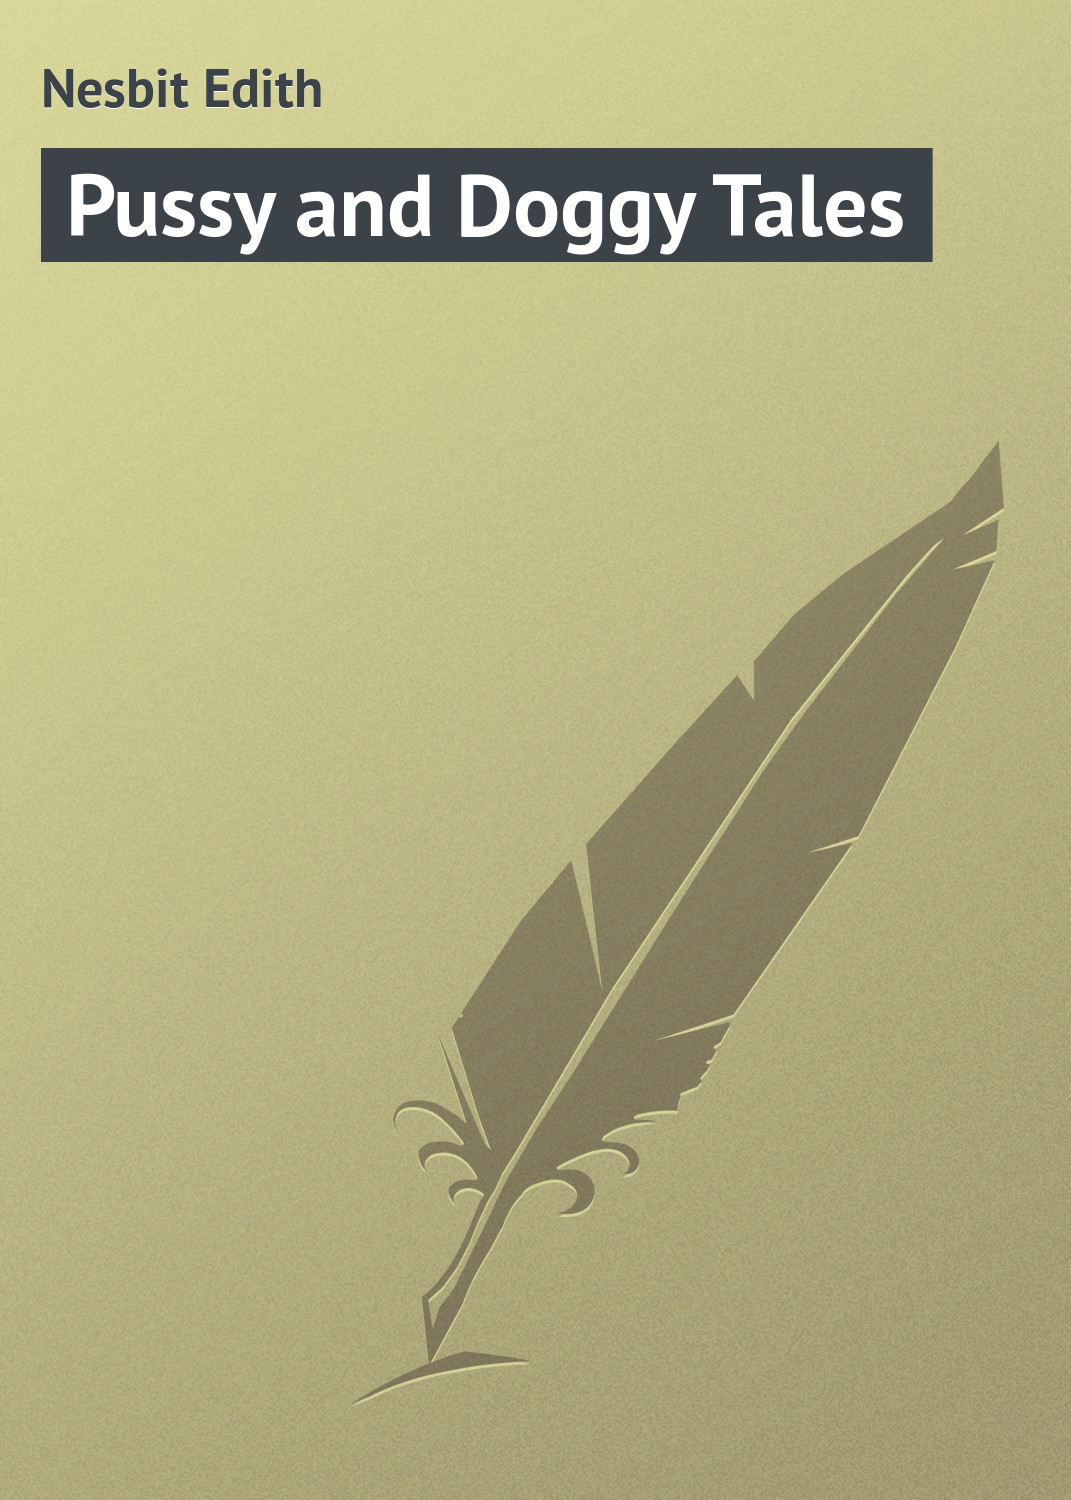 Книга Pussy and Doggy Tales из серии , созданная Edith Nesbit, может относится к жанру Зарубежная классика, Зарубежные детские книги, Иностранные языки. Стоимость электронной книги Pussy and Doggy Tales с идентификатором 23154347 составляет 5.99 руб.